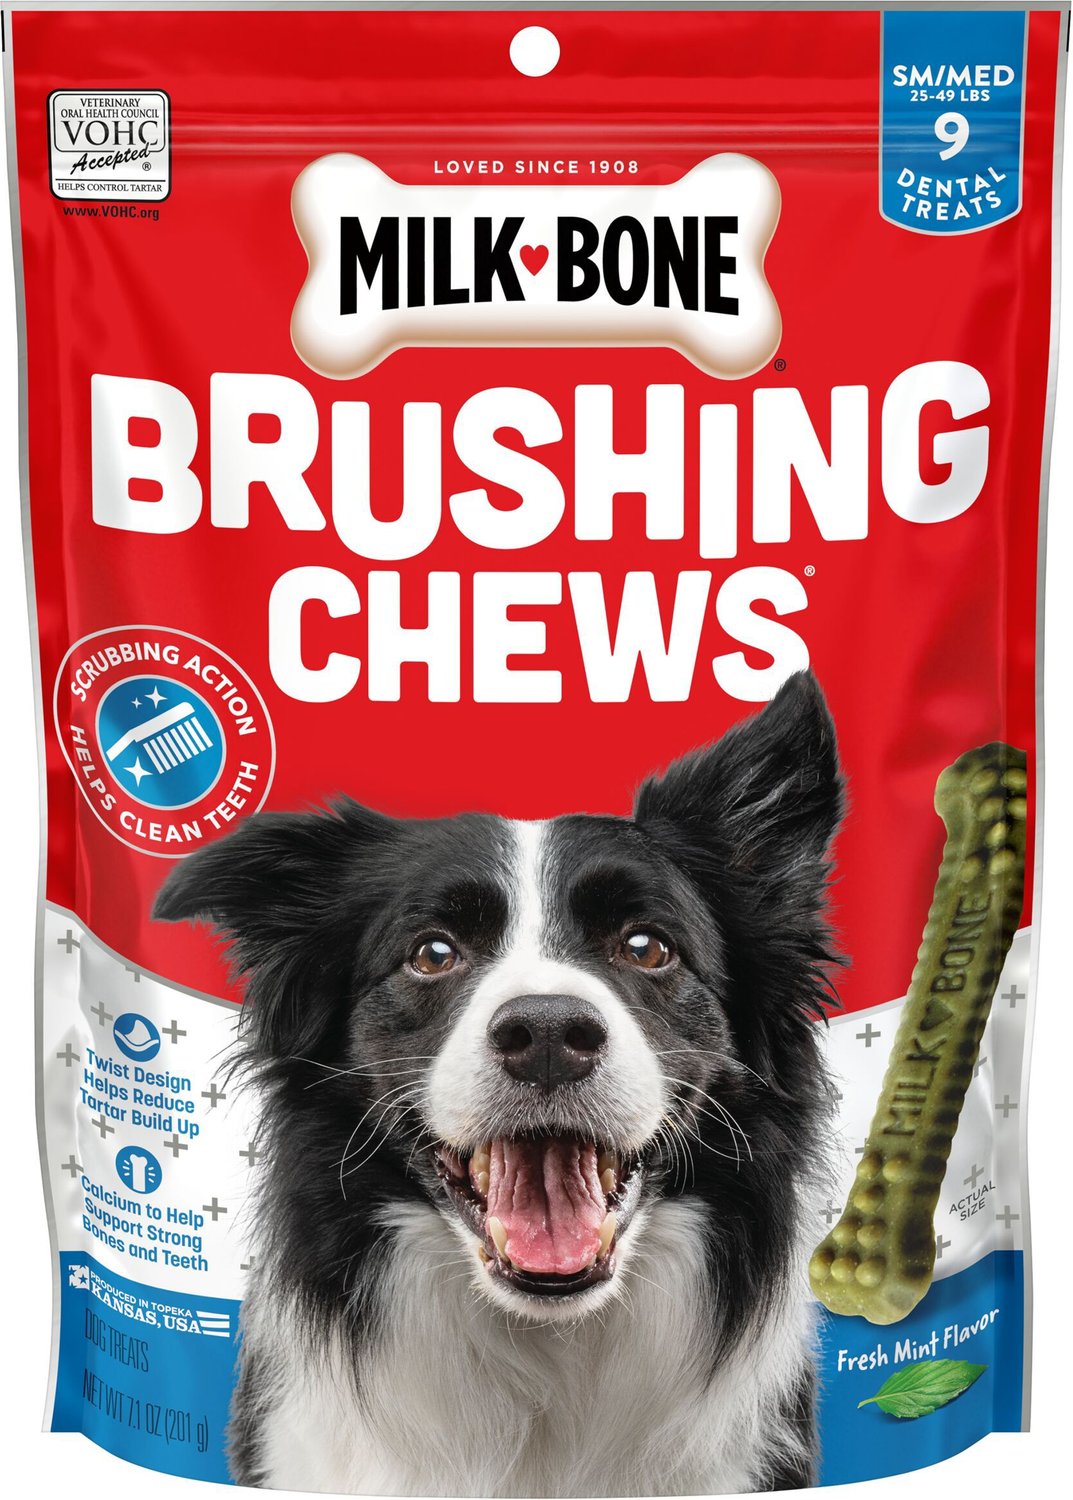 Freshens Breath Milk-Bone Original Dog Treats Cleans Teeth 